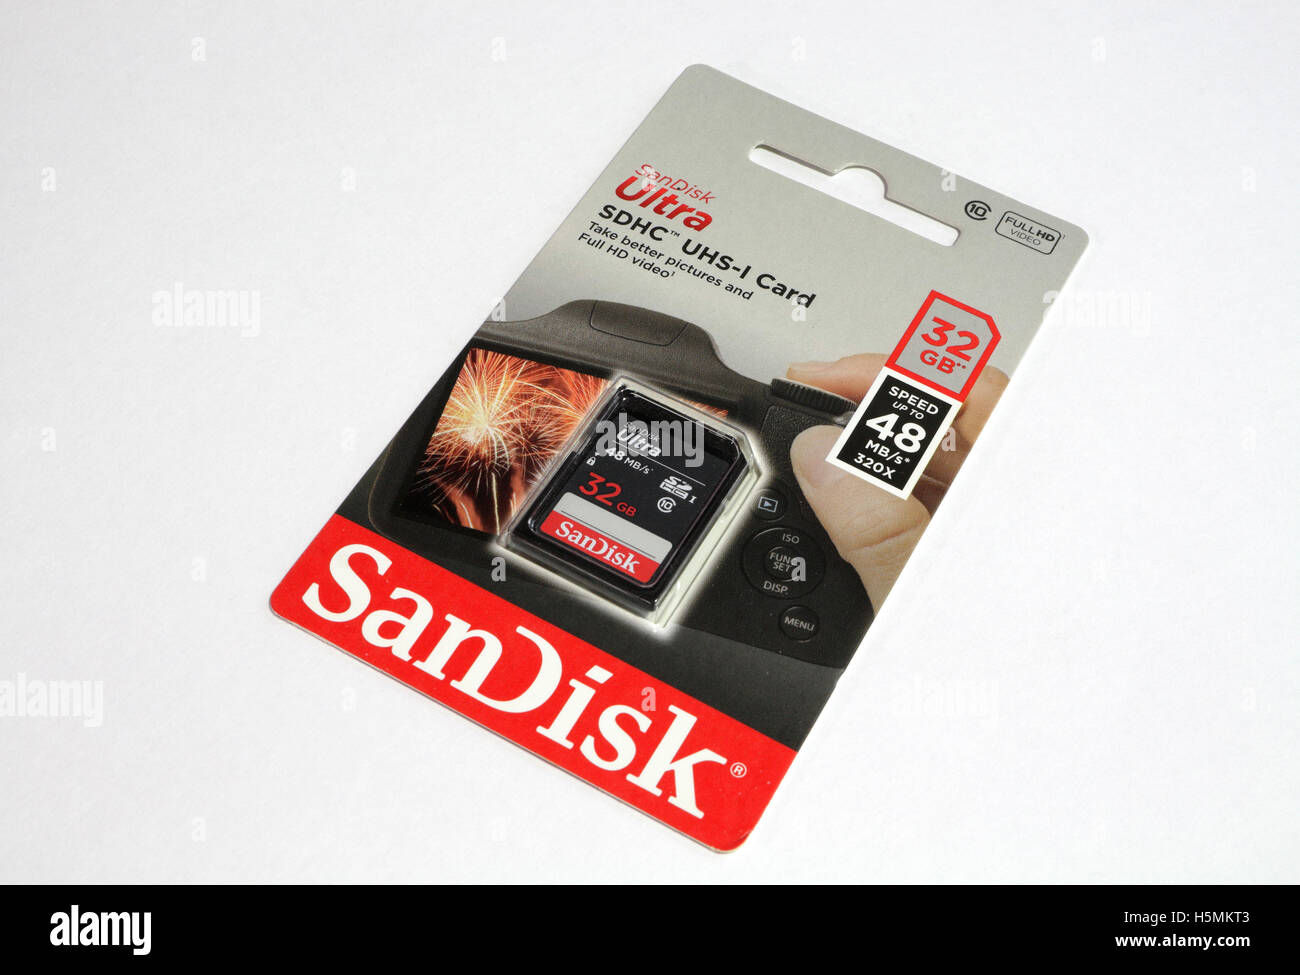 Carte mémoire Sandisk dans l'emballage Banque D'Images